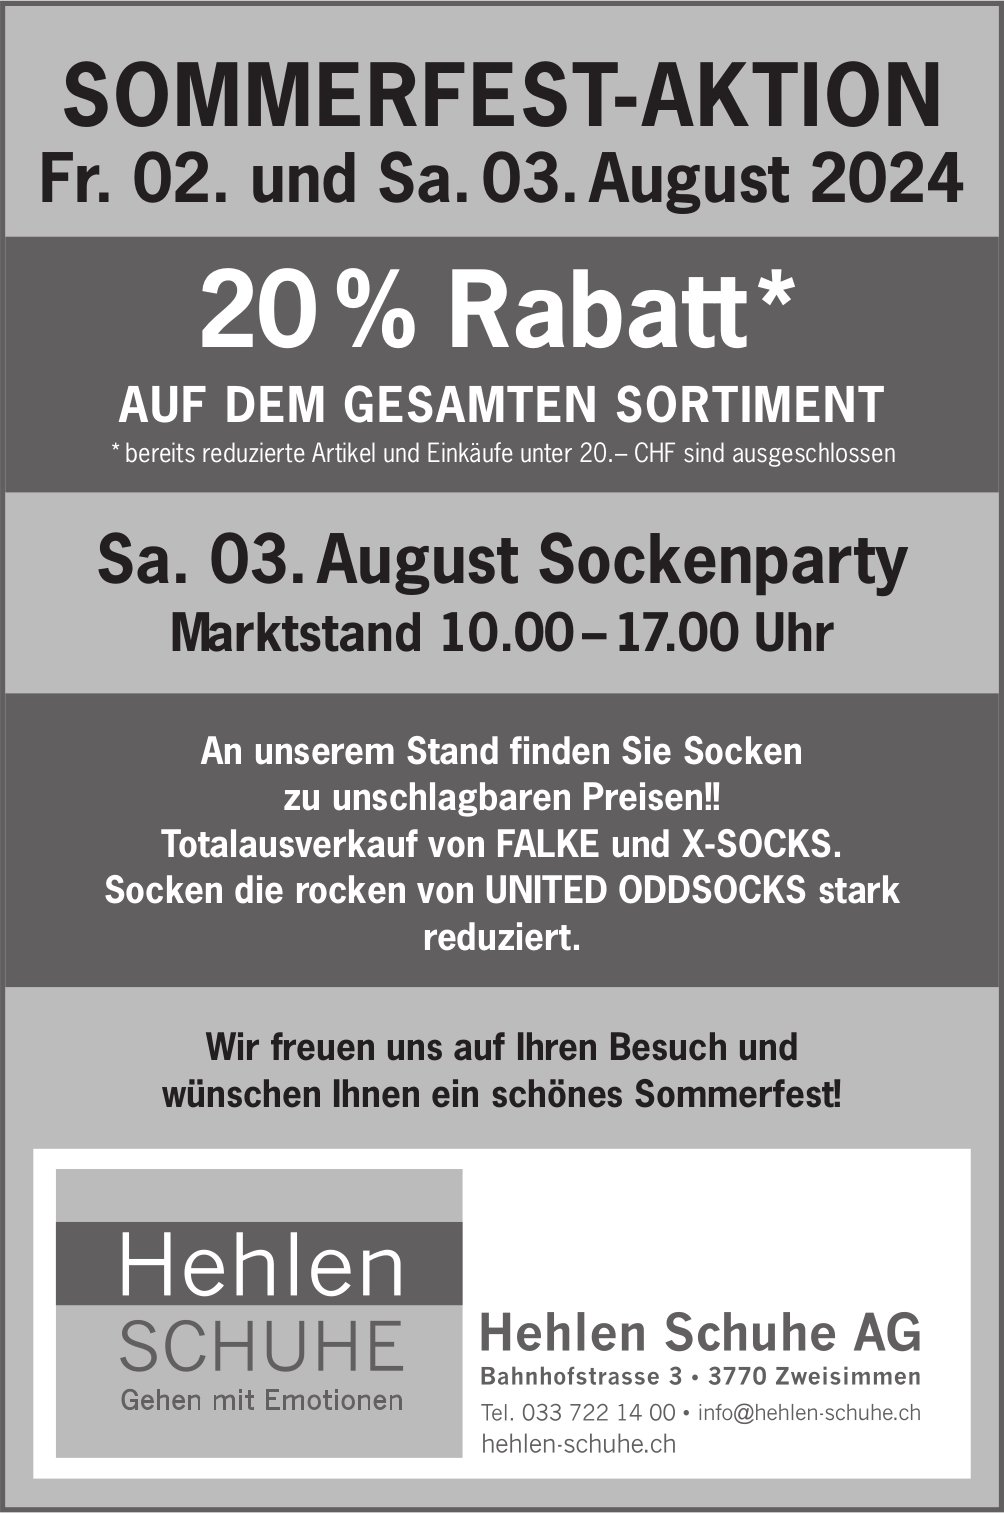 Sommerfest-Aktion & Sockenparty, 2. - 3. August, Hehlen Schuhe AG, Zweisimmen